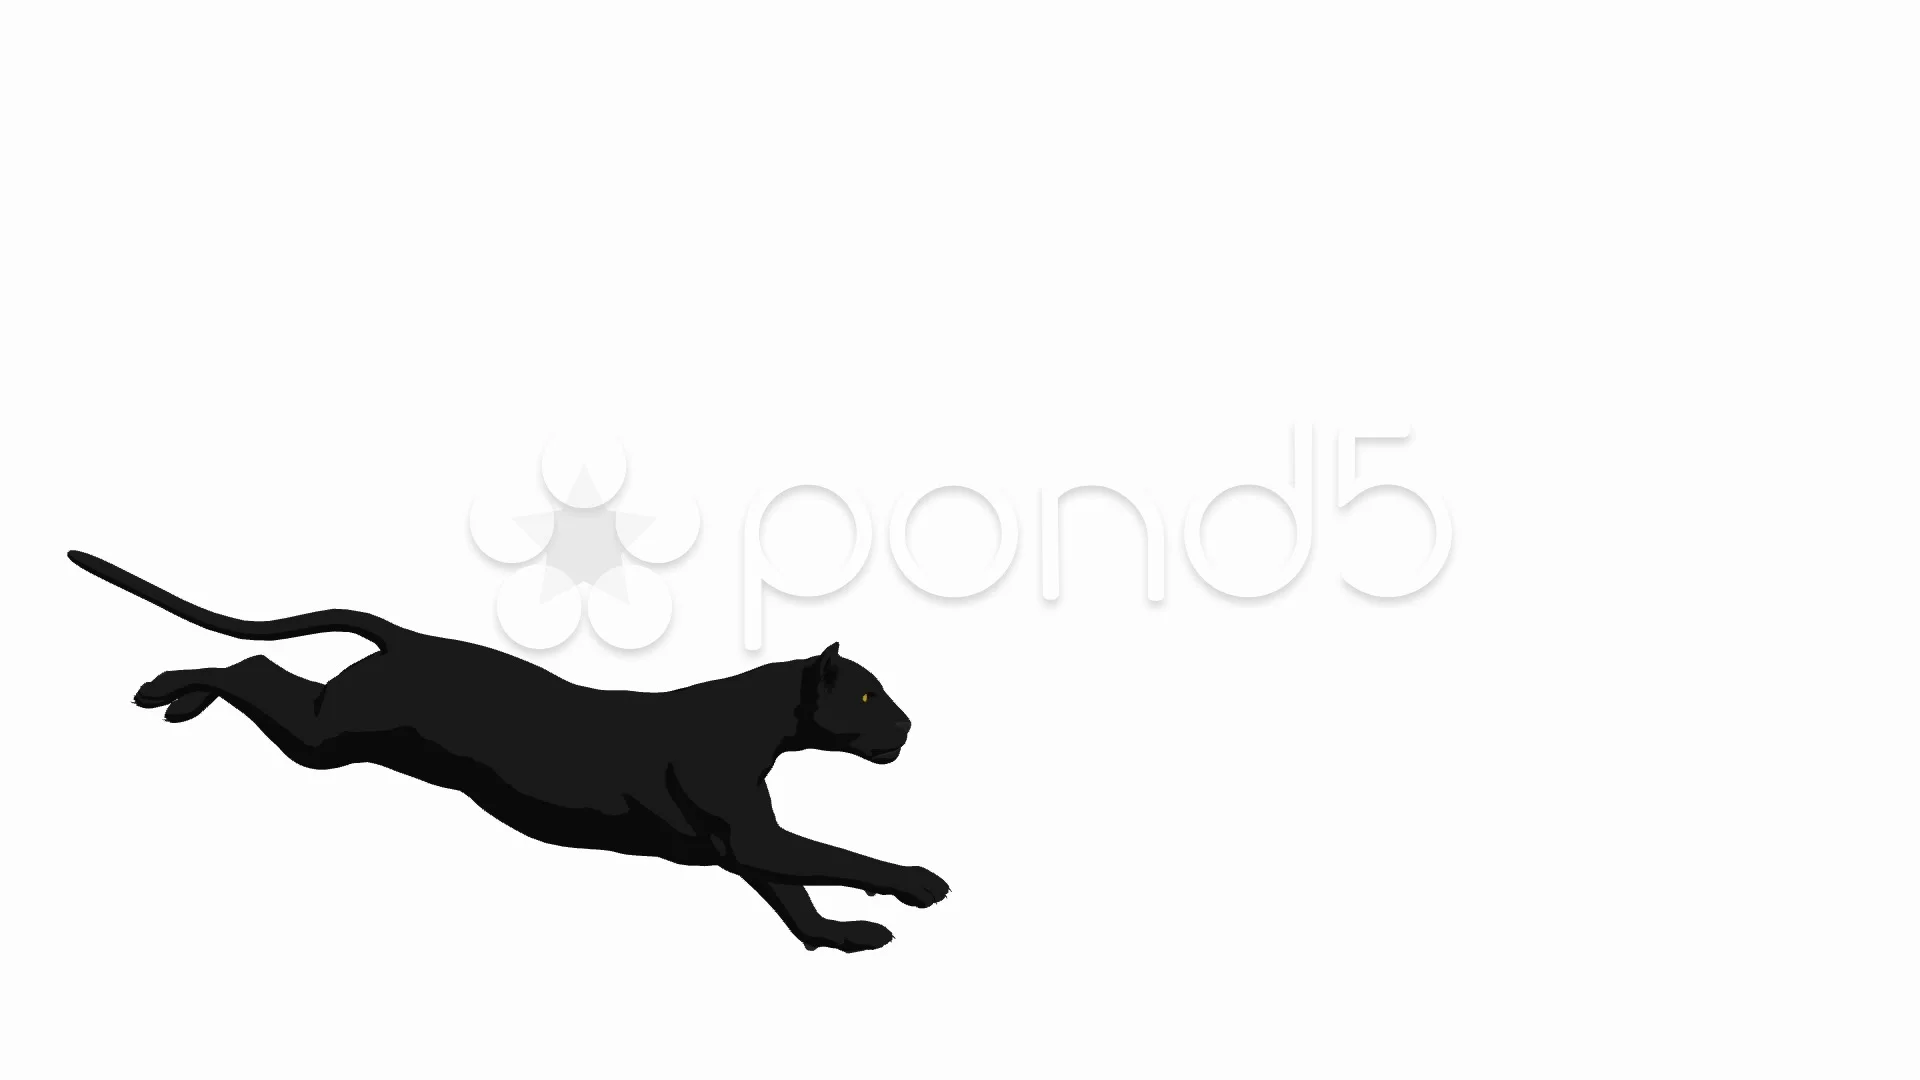 black panther animal running